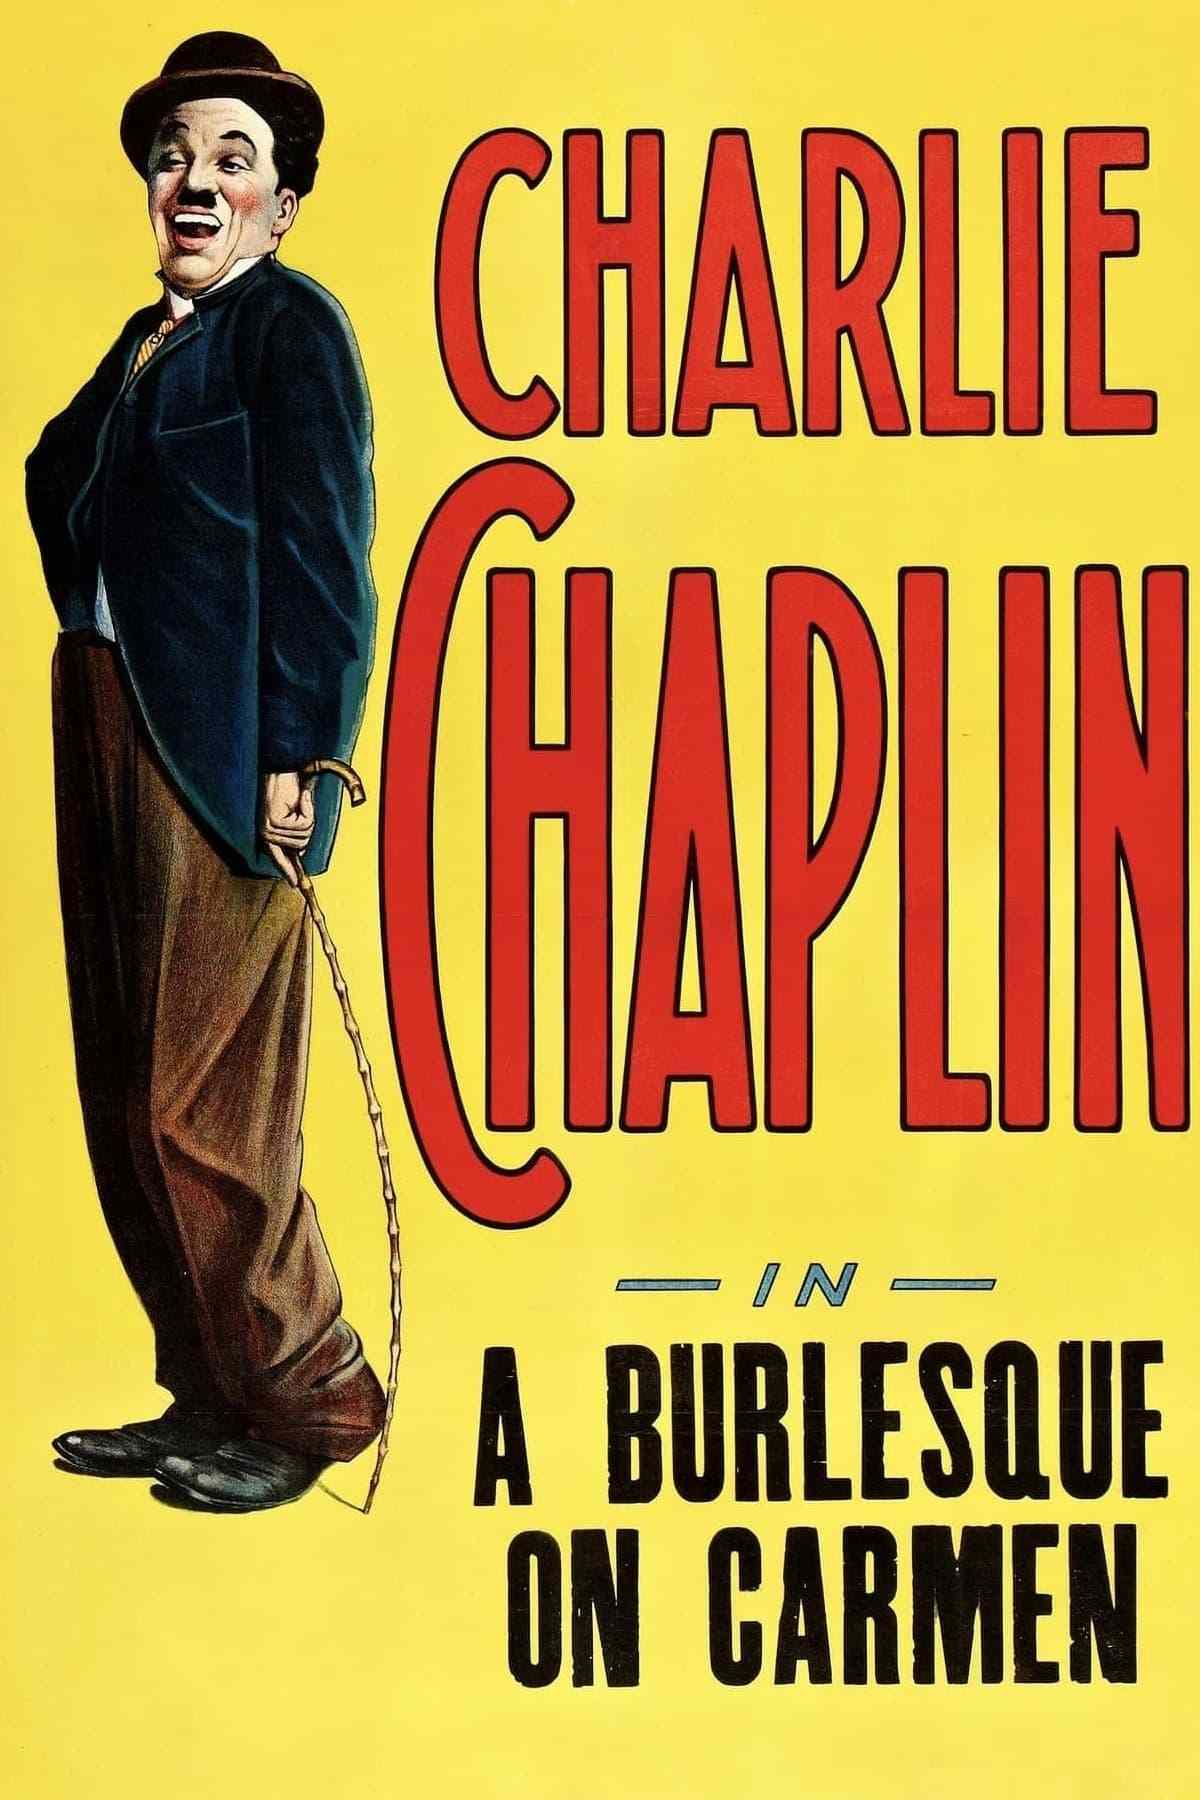 Charlie Chaplin : A Burlesque on Carmen [Silent Movie]